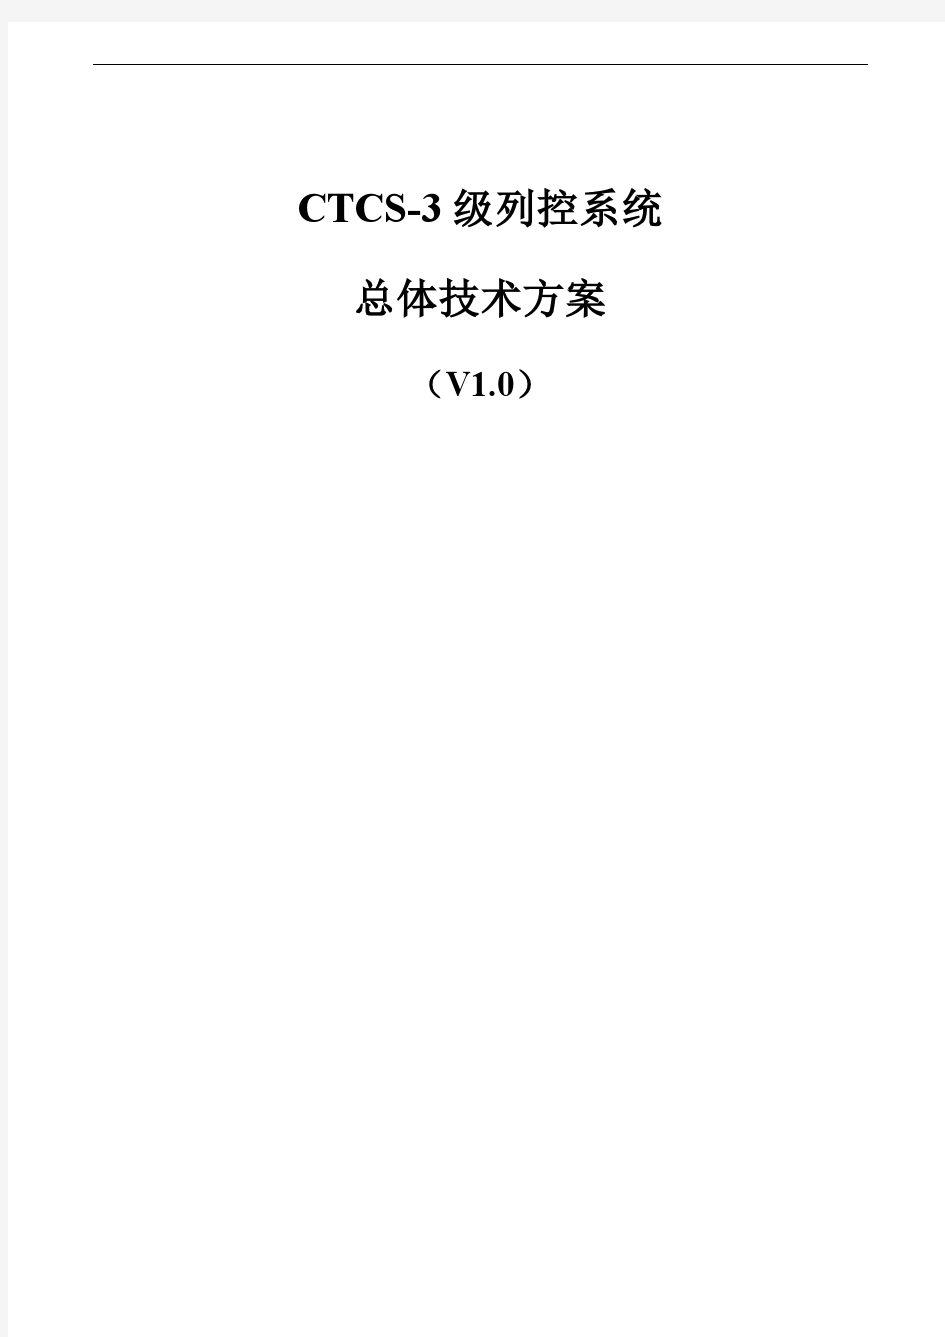 ☆ CTCS-3级列控系统总体技术方案